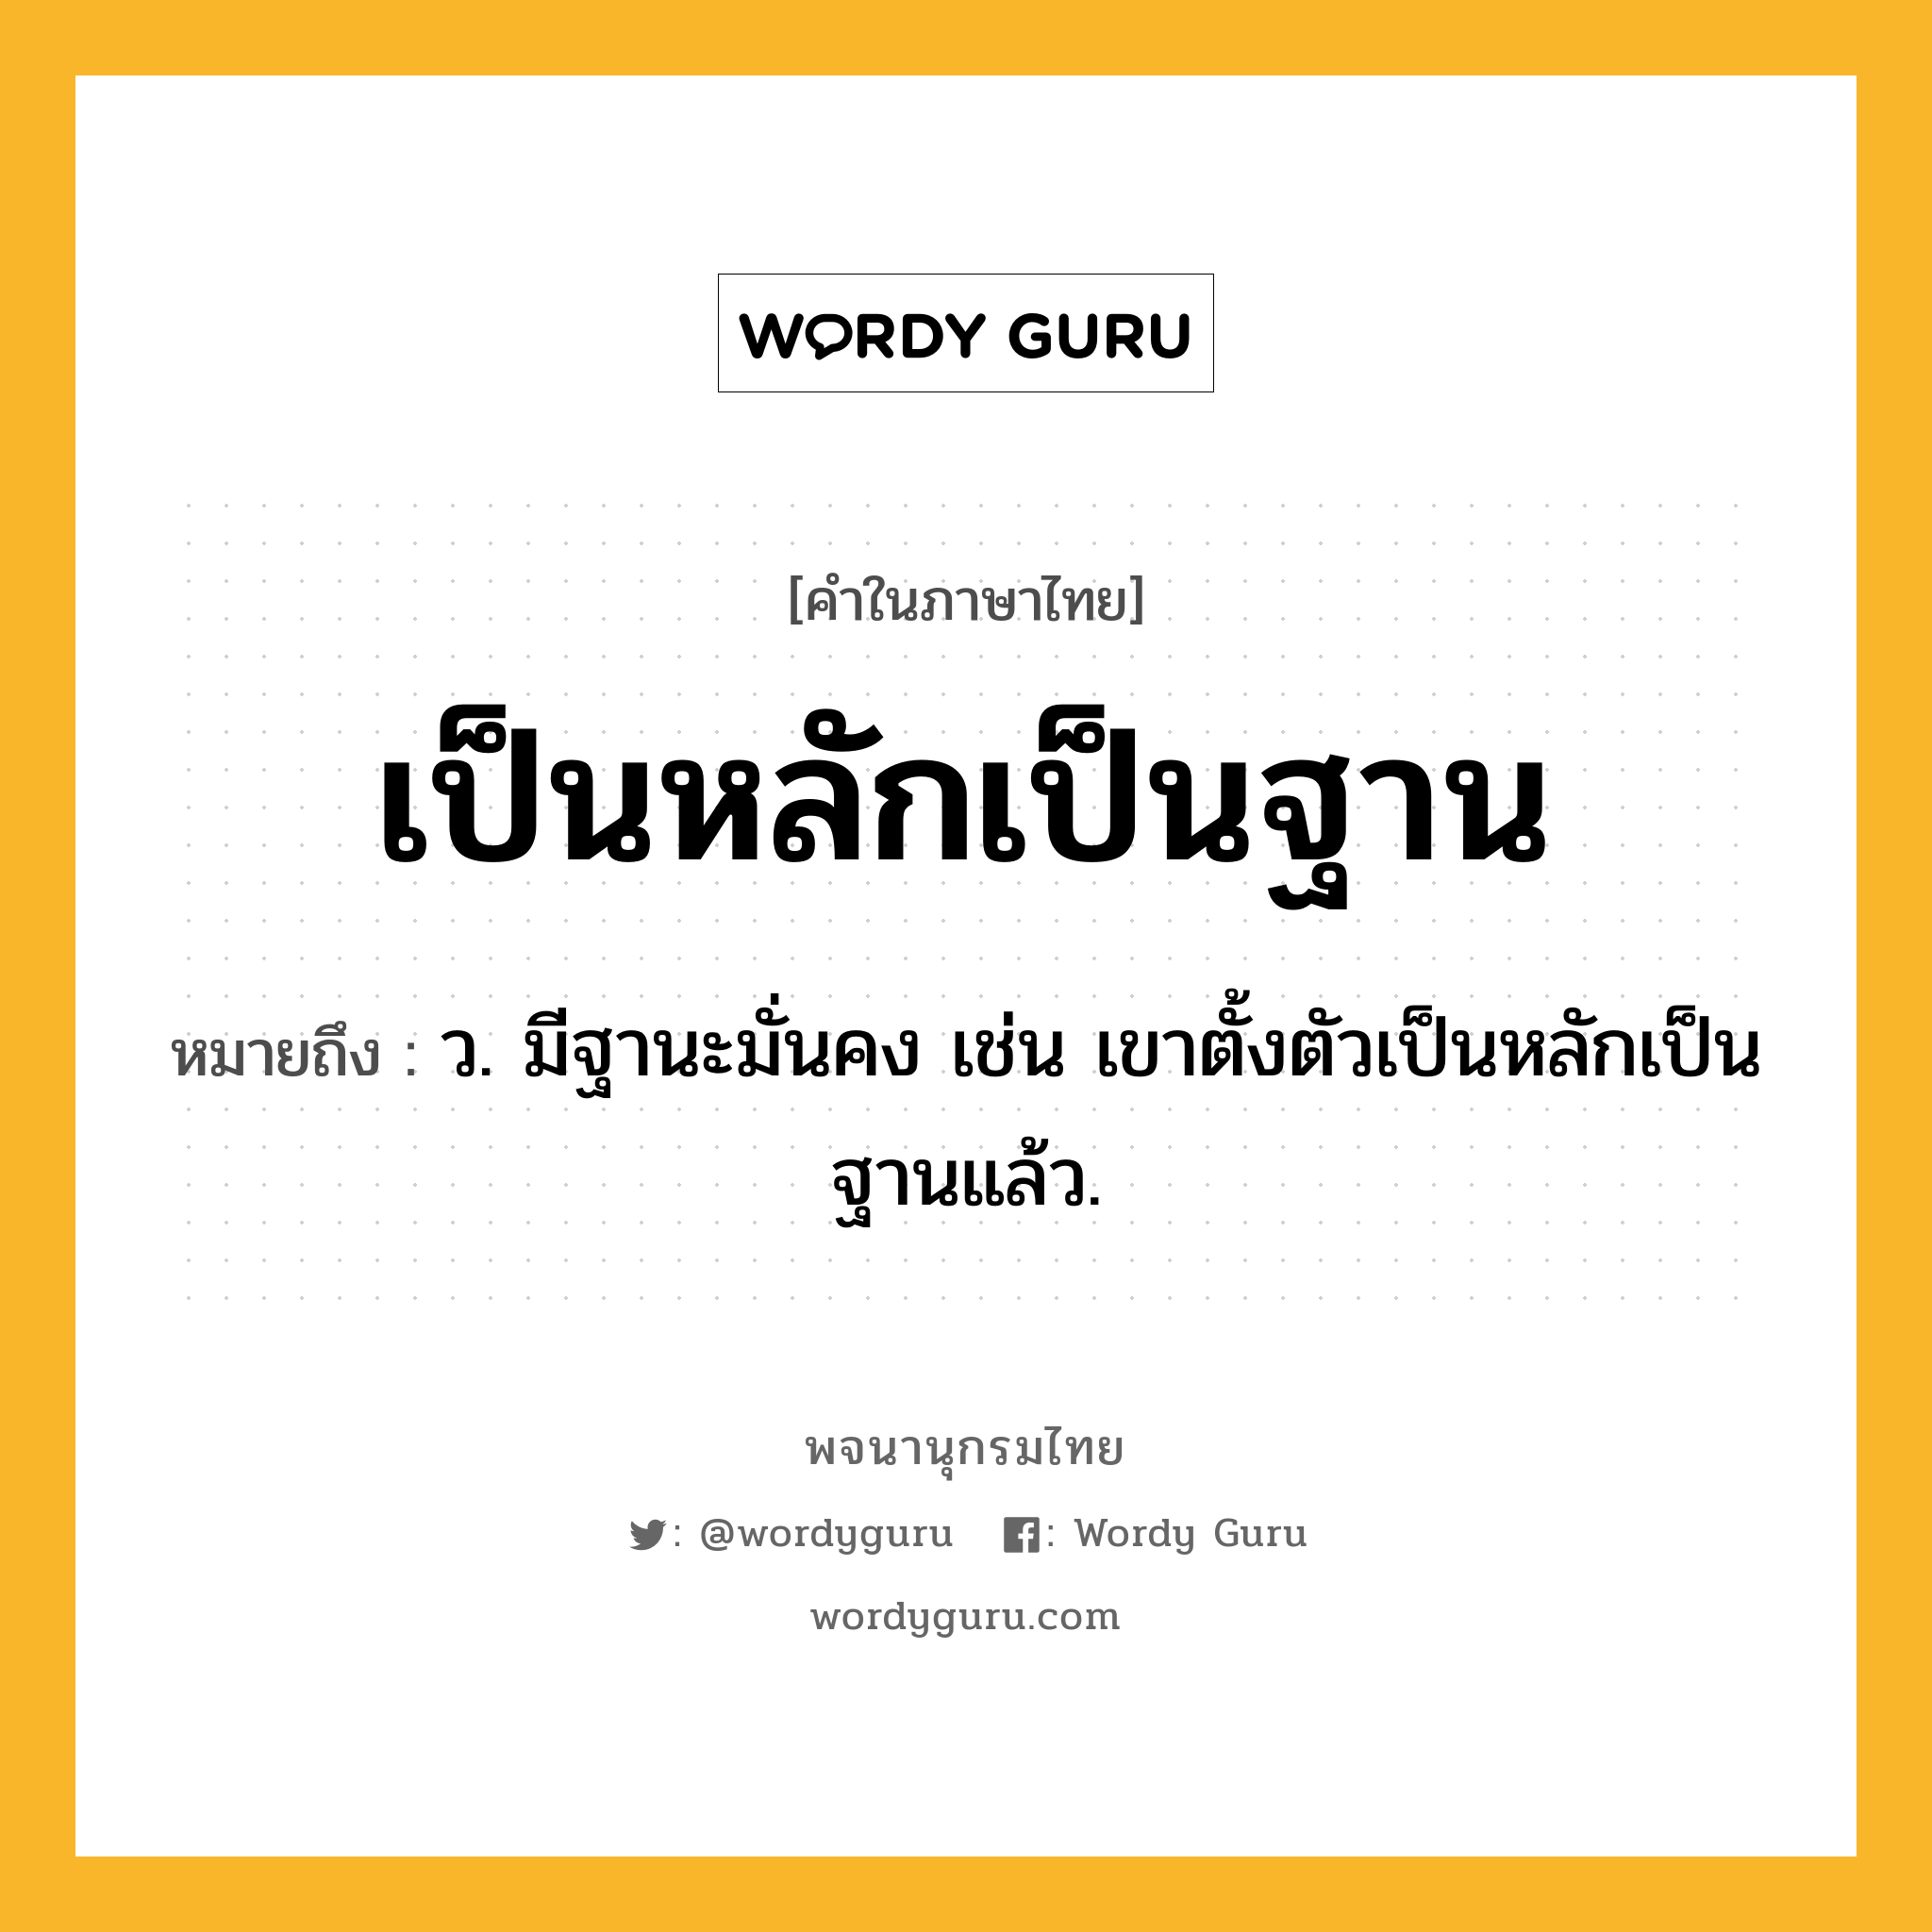 เป็นหลักเป็นฐาน ความหมาย หมายถึงอะไร?, คำในภาษาไทย เป็นหลักเป็นฐาน หมายถึง ว. มีฐานะมั่นคง เช่น เขาตั้งตัวเป็นหลักเป็นฐานแล้ว.